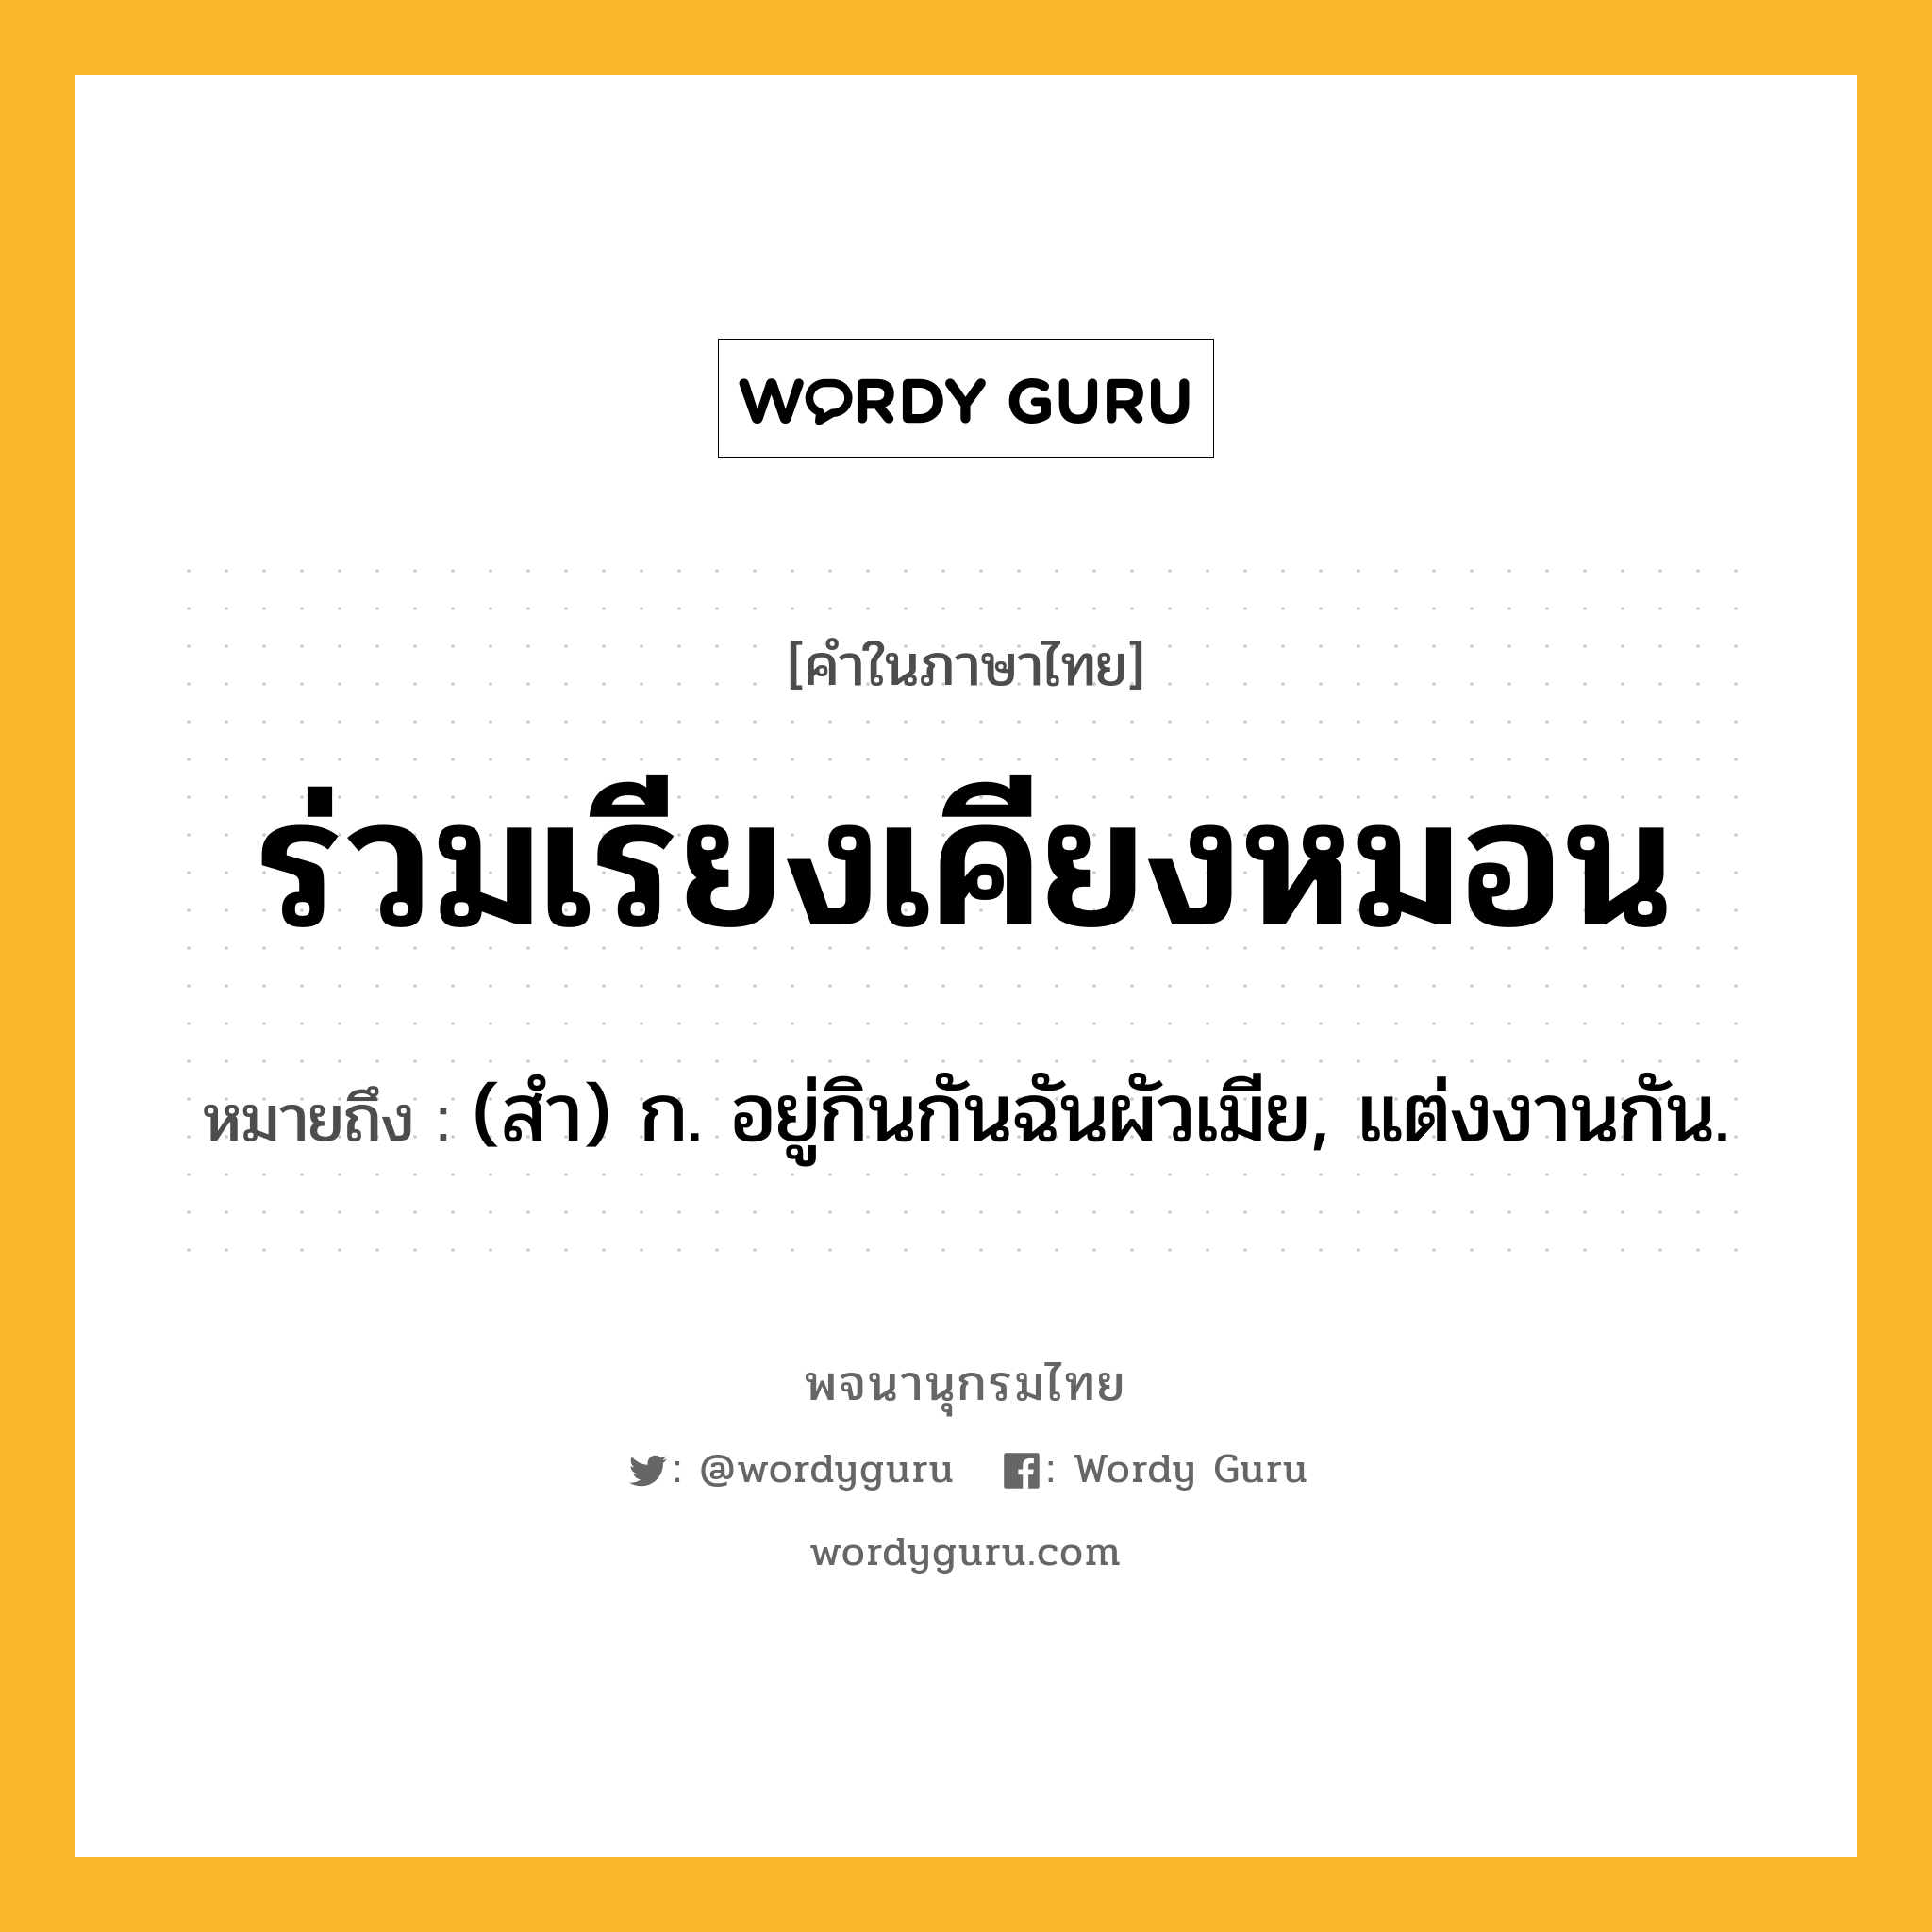 ร่วมเรียงเคียงหมอน ความหมาย หมายถึงอะไร?, คำในภาษาไทย ร่วมเรียงเคียงหมอน หมายถึง (สํา) ก. อยู่กินกันฉันผัวเมีย, แต่งงานกัน.